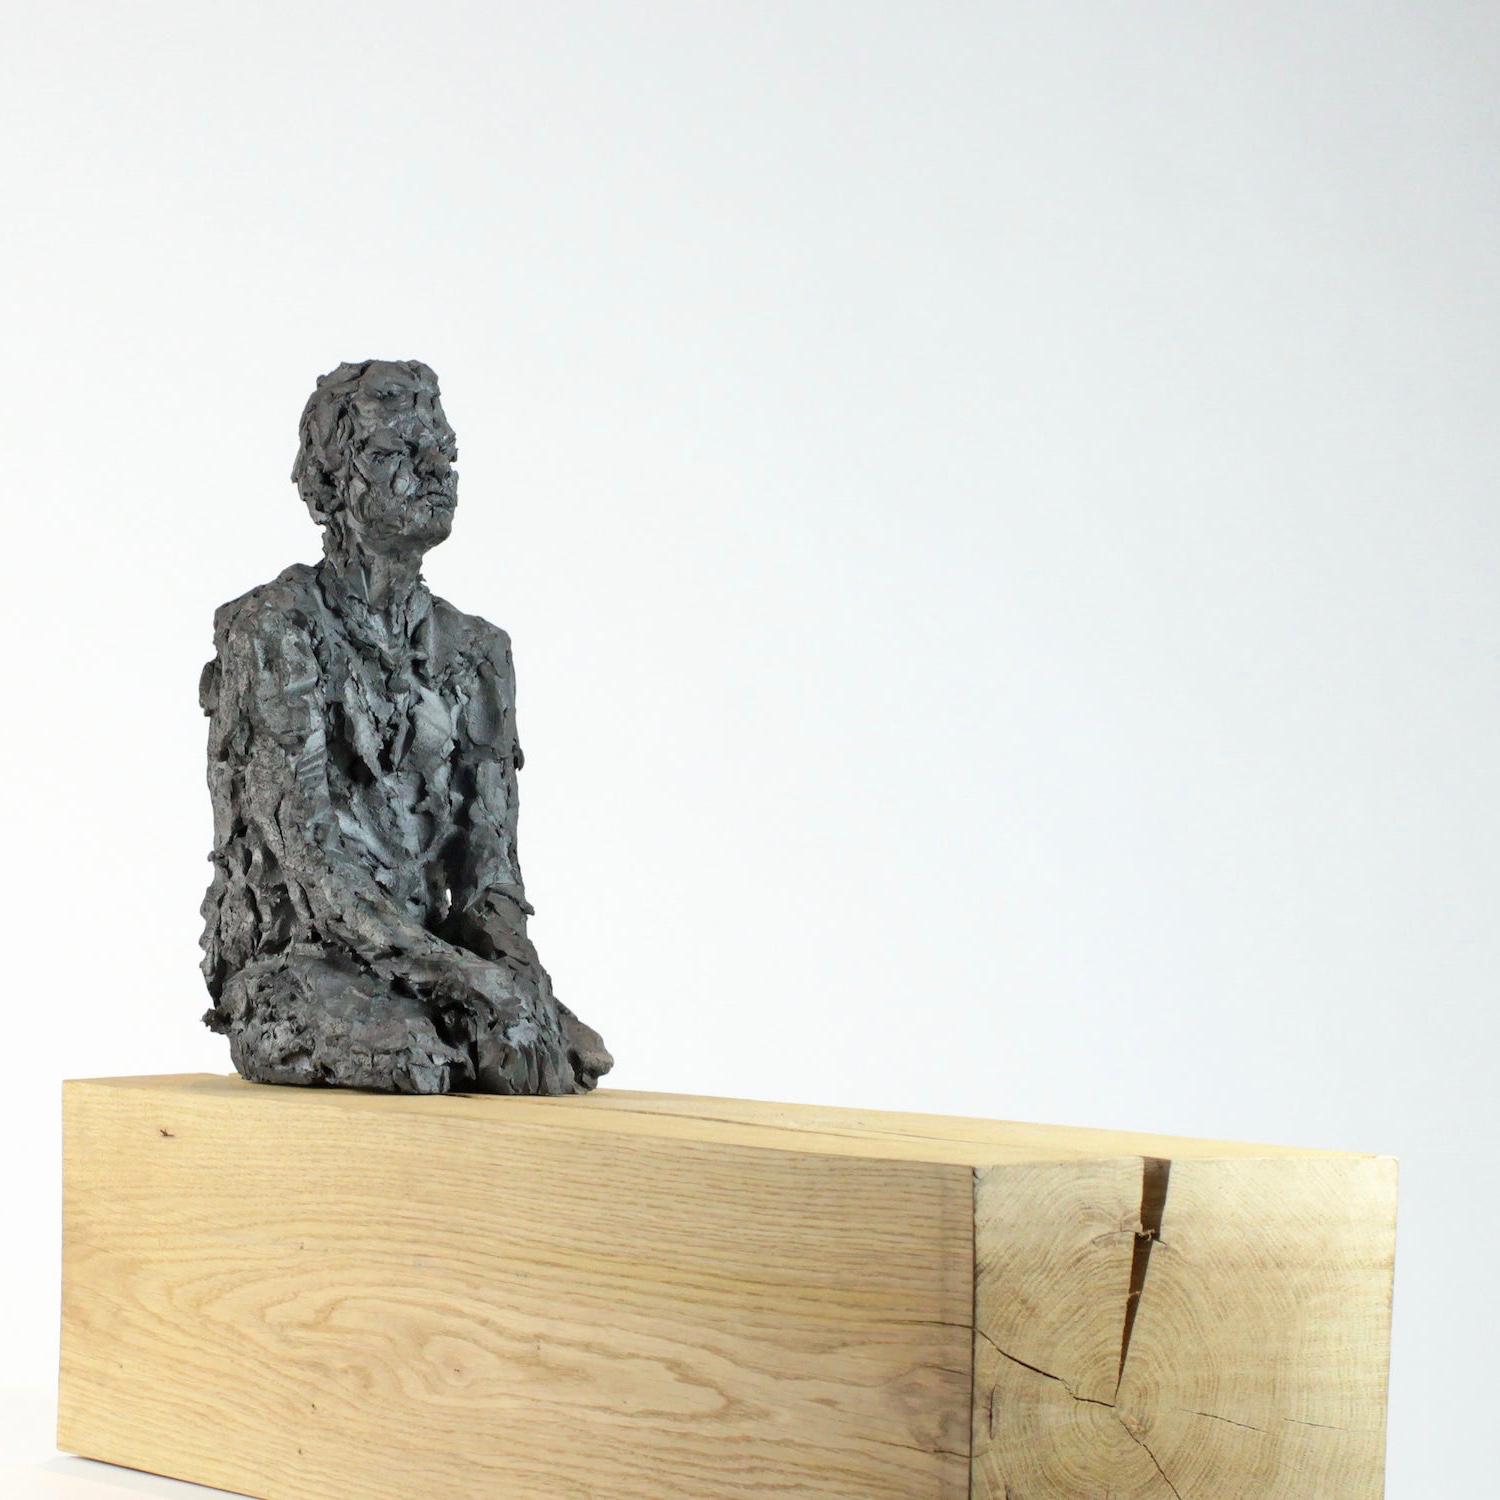 Vestibule des pommes (avec Martin) est une sculpture unique en grès cuit au four de l'artiste contemporaine française Cécile Raynal, dont les dimensions sont de 46 × 57 × 19 cm (18,1 × 22,4 × 7,5 in). Les dimensions incluent la base en bois